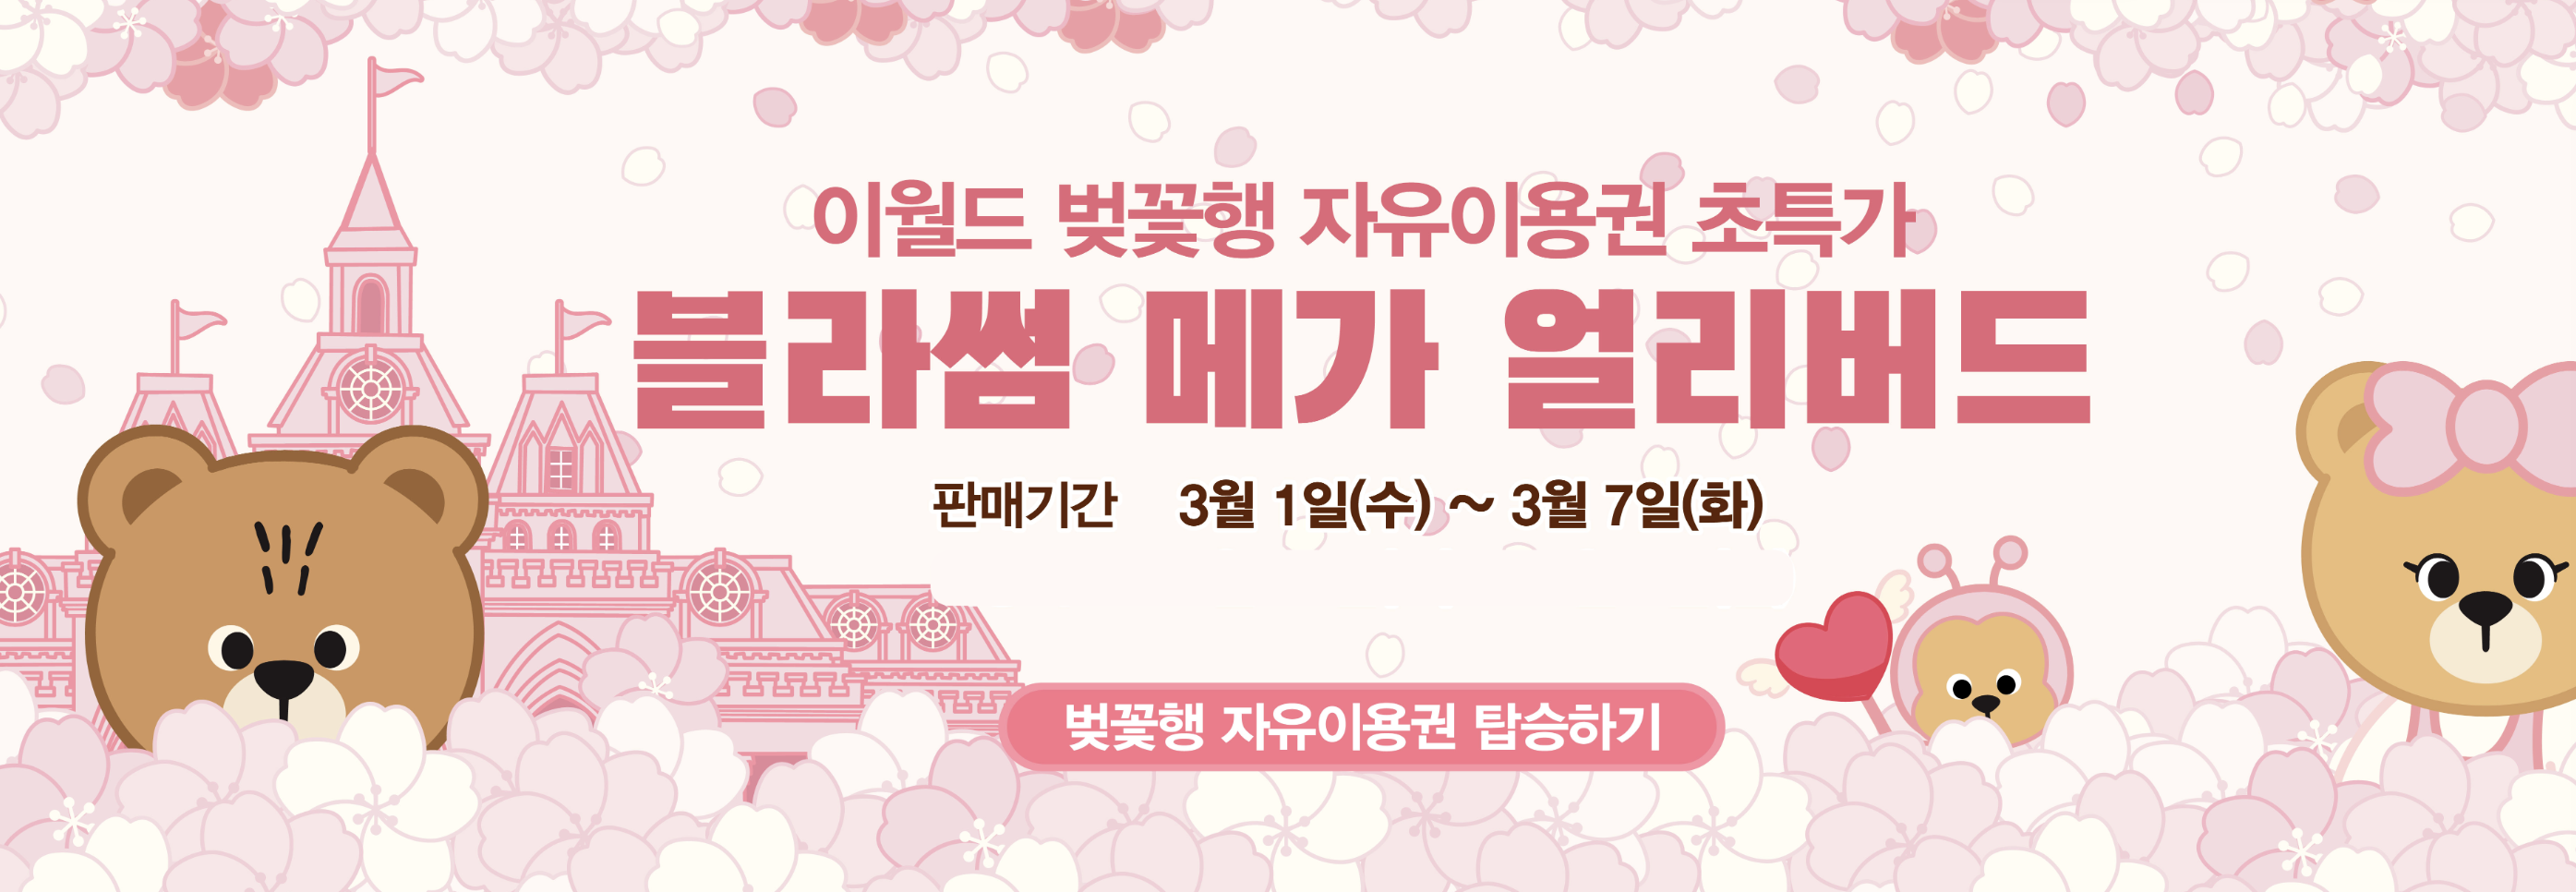 2023 국내 벚꽃개화시기 전국 벚꽃축제 3월 4월 가볼만한곳 BEST 05